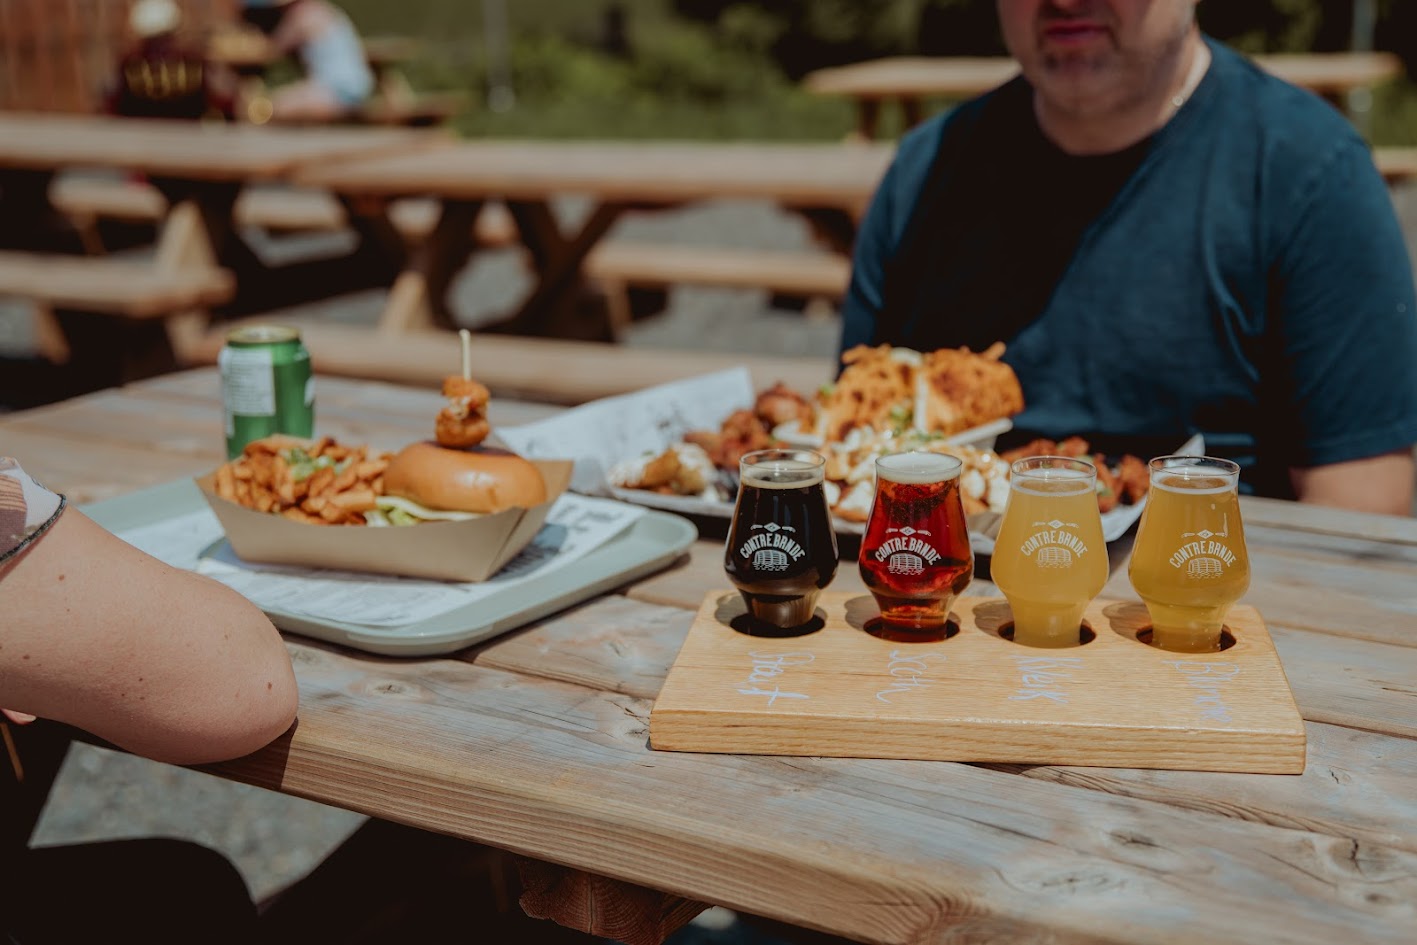 Une scène de repas en plein air avec une table en bois contenant une série de bières variées, un hamburger, des frites et d'autres entrées, avec des personnes partiellement visibles en arrière-plan.